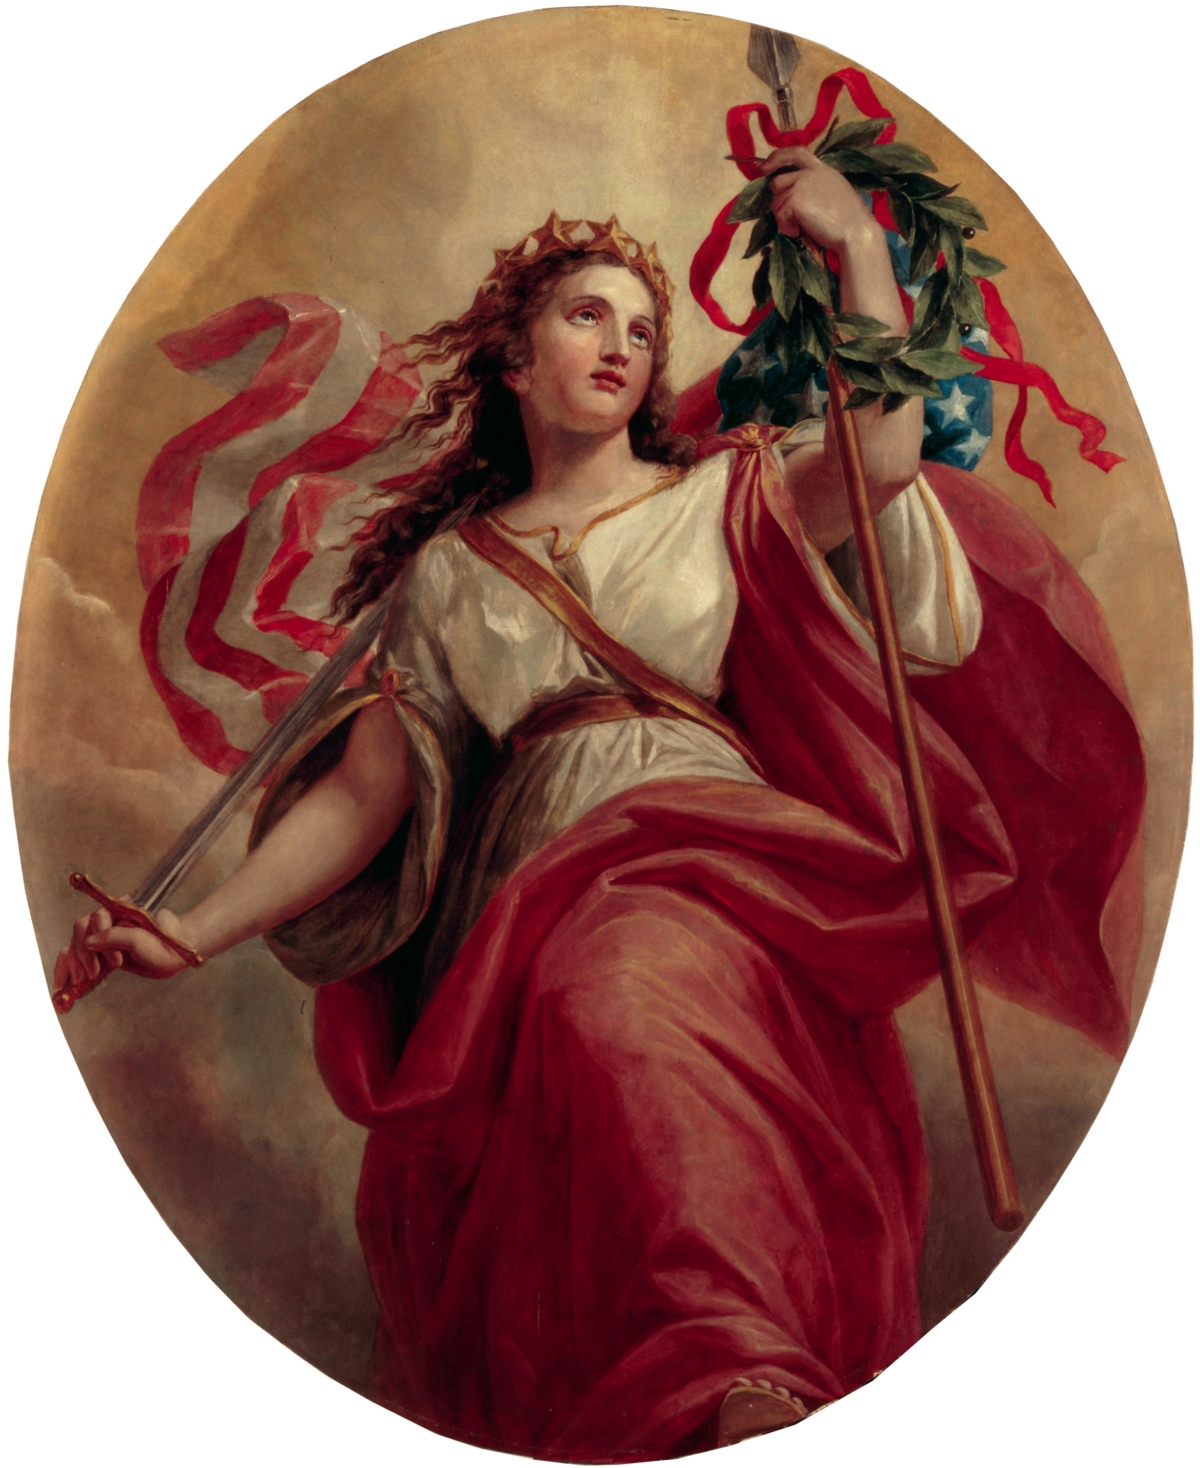 Bức tranh “Liberty” (Quyền tự do) của họa sĩ Constantino Brumidi được treo trên trần của sảnh vào Tòa Bạch Ốc. Hiệp hội Lịch sử Tòa Bạch Ốc. (Ảnh: Tài liệu công cộng)